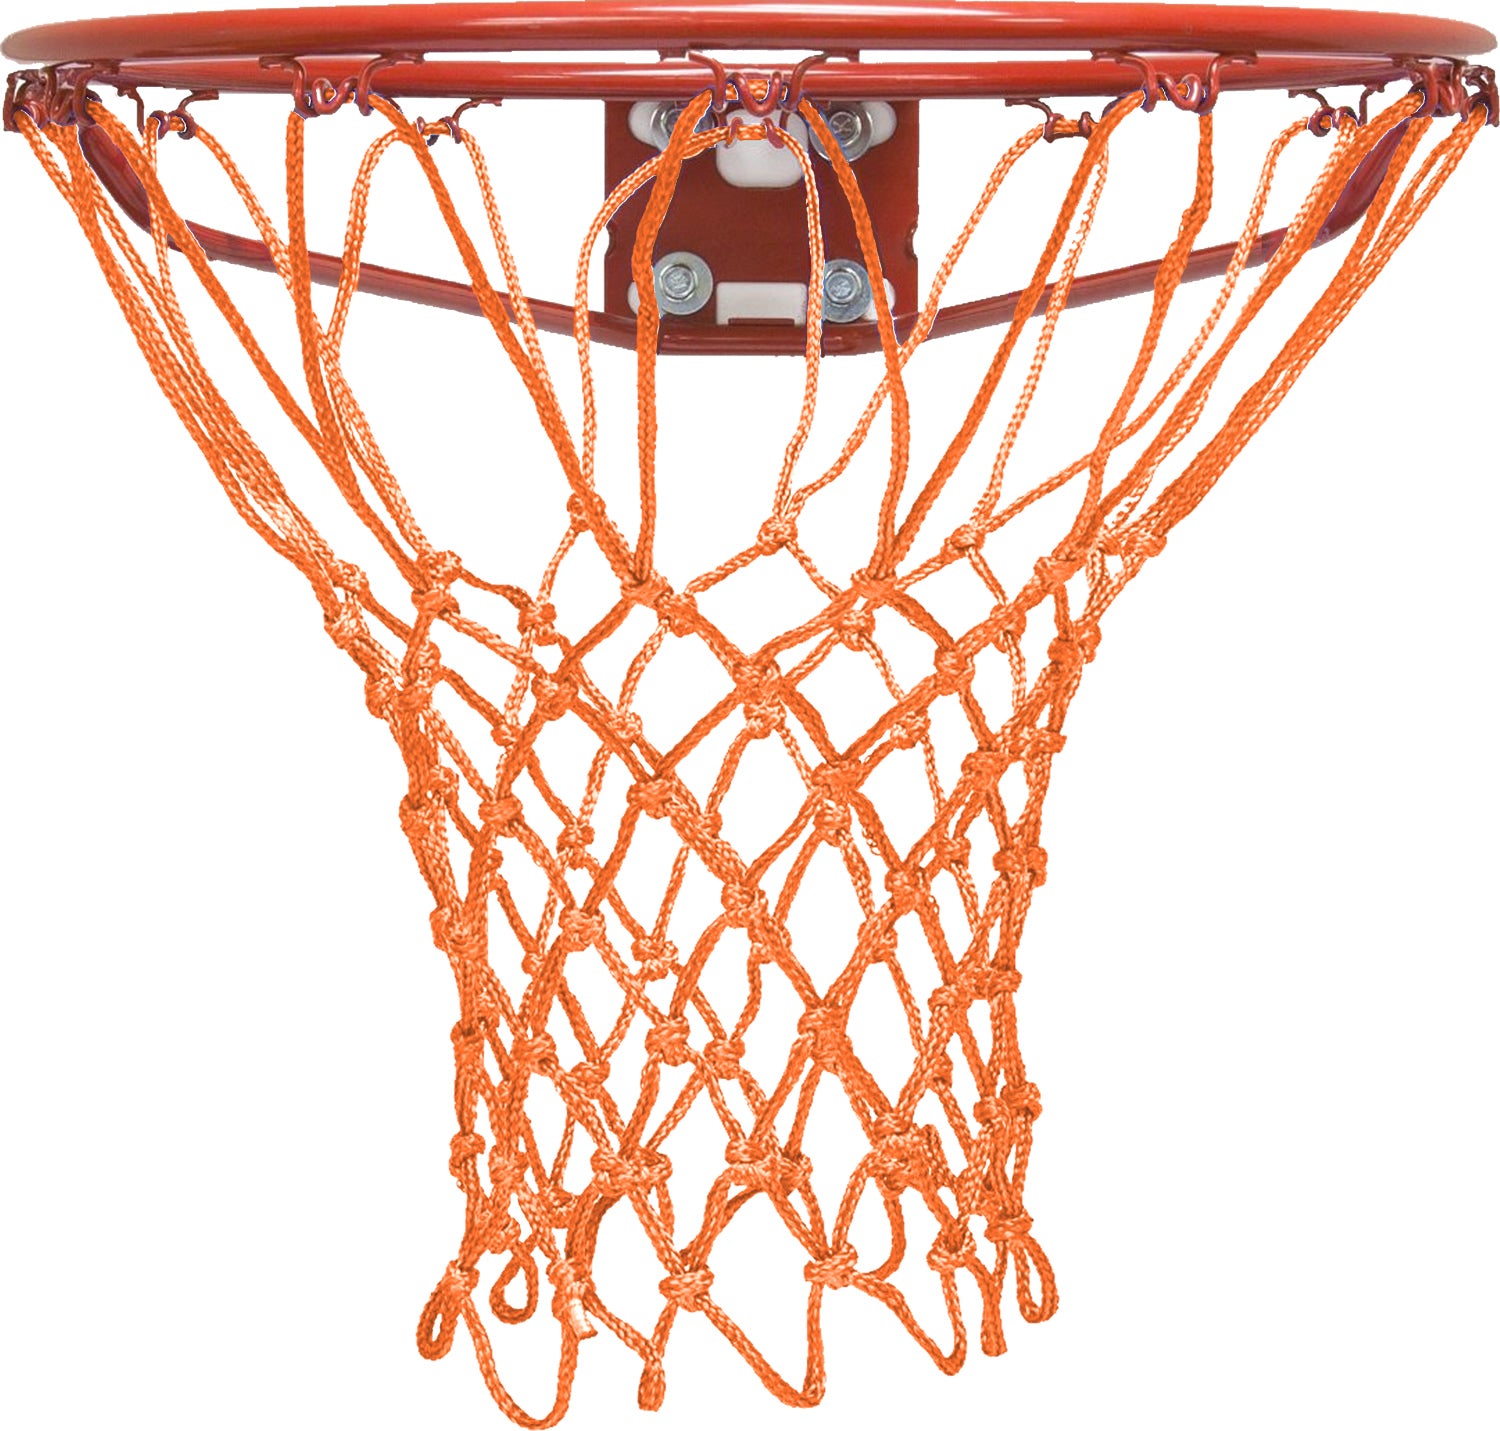 Krazy Netz Heavy Duty Orange Basketball Rim Net